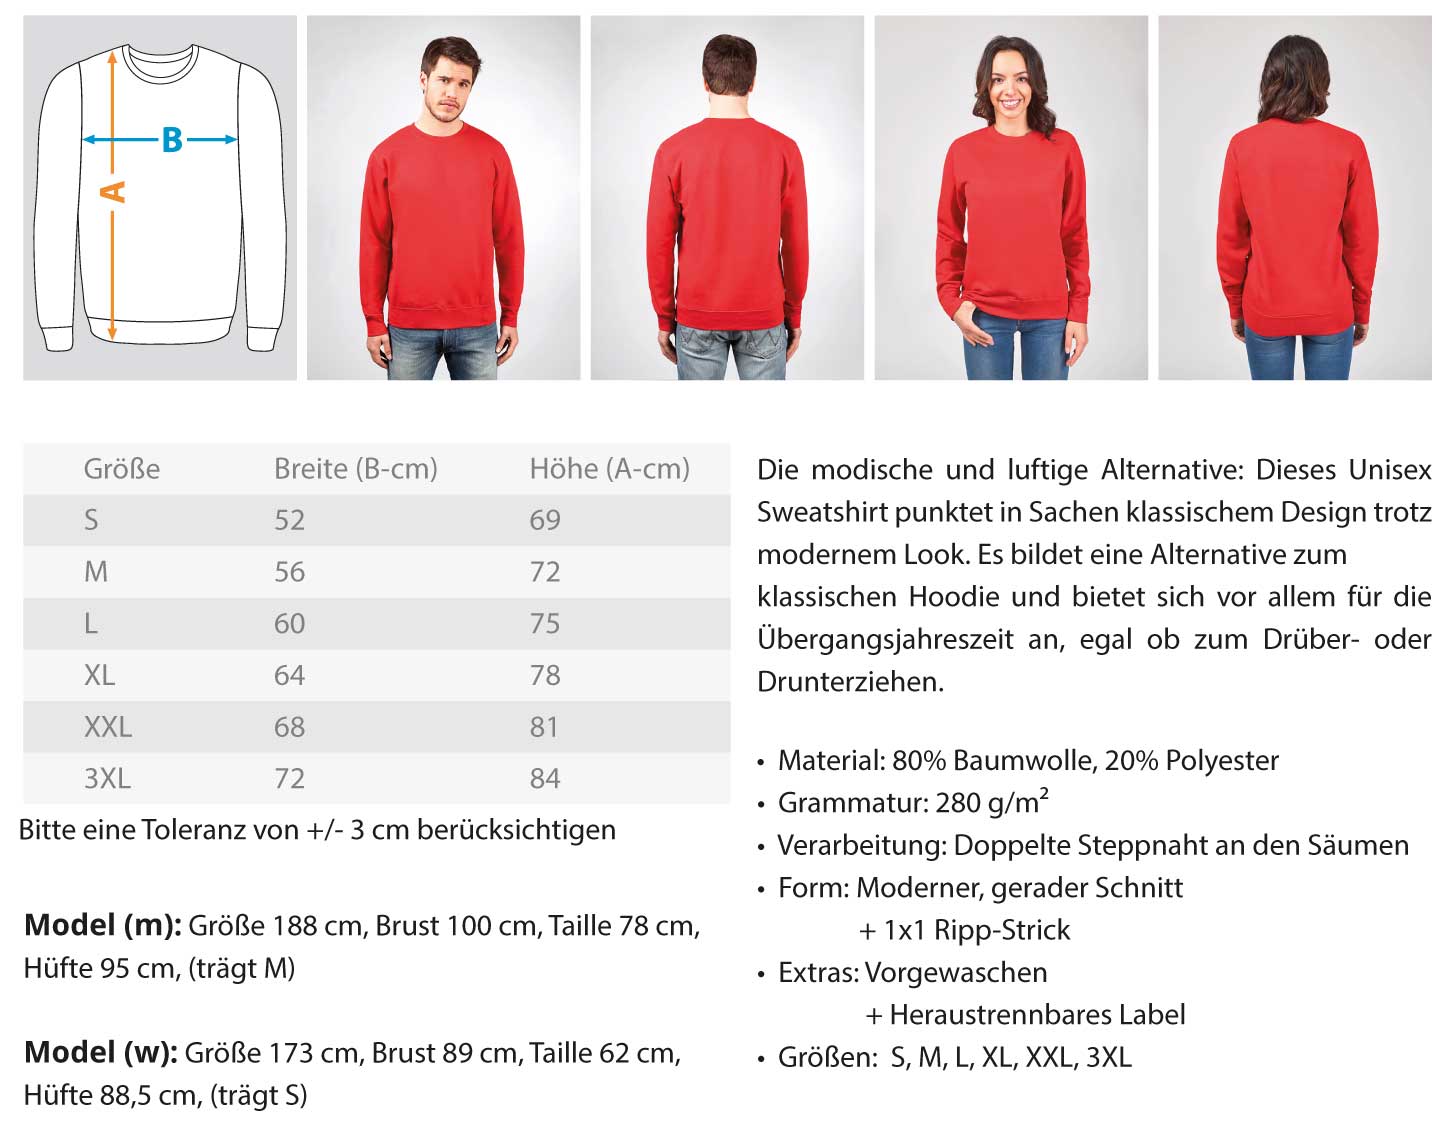 H+P Gerüstbau  - Unisex Pullover €36.95 Gerüstbauer - Shop >>